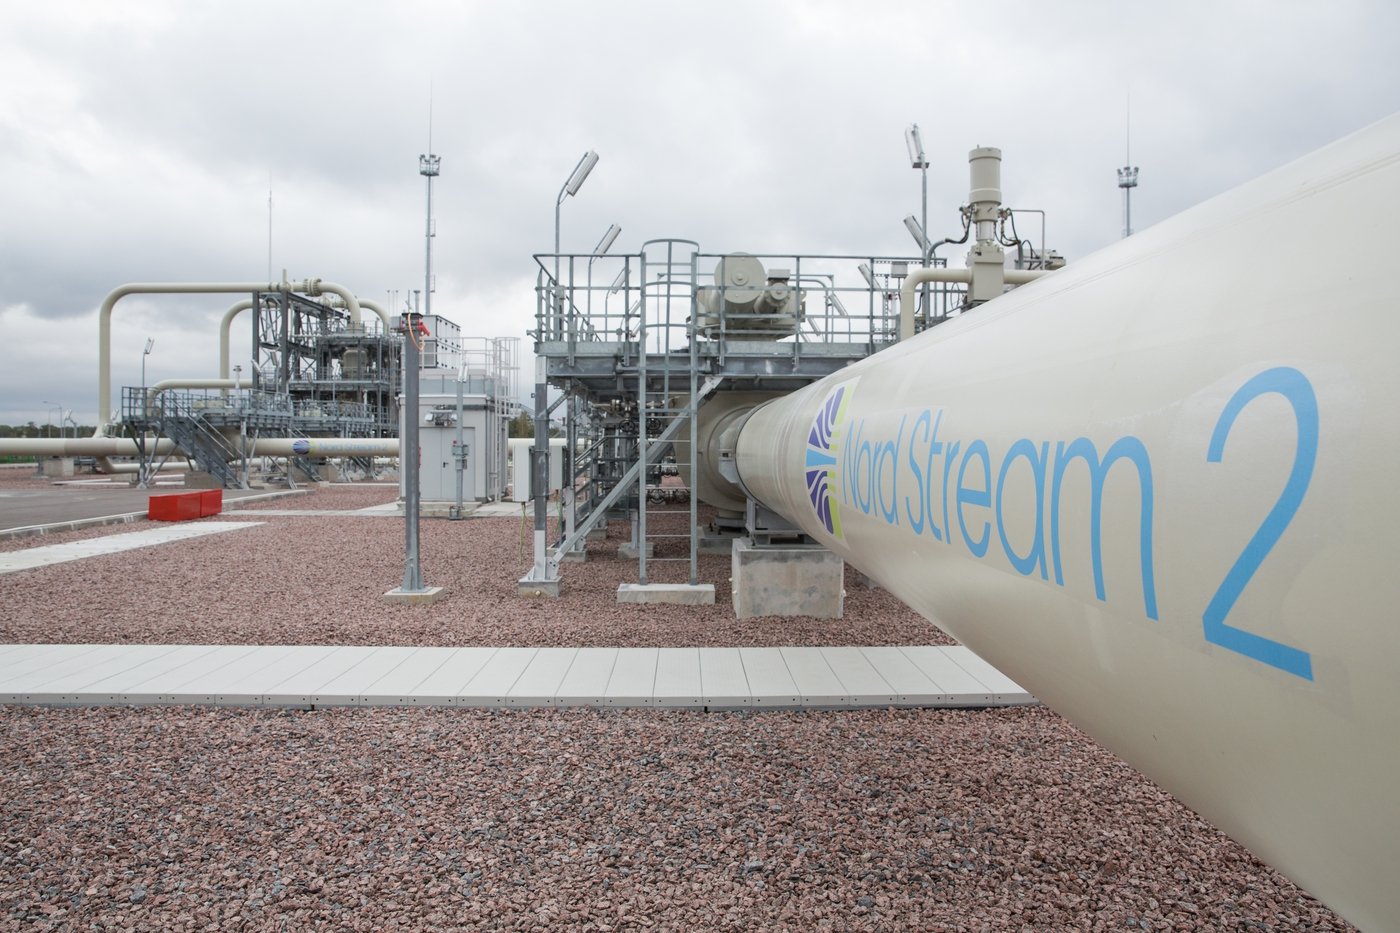 Europa discute saídas para crise do gás natural. Na imagem: gasoduto Russo-Alemão "Nord Stream 2", projeto liderado pela russa Gazprom (Foto: Nikolai Ryutin_Nord Stream 2)